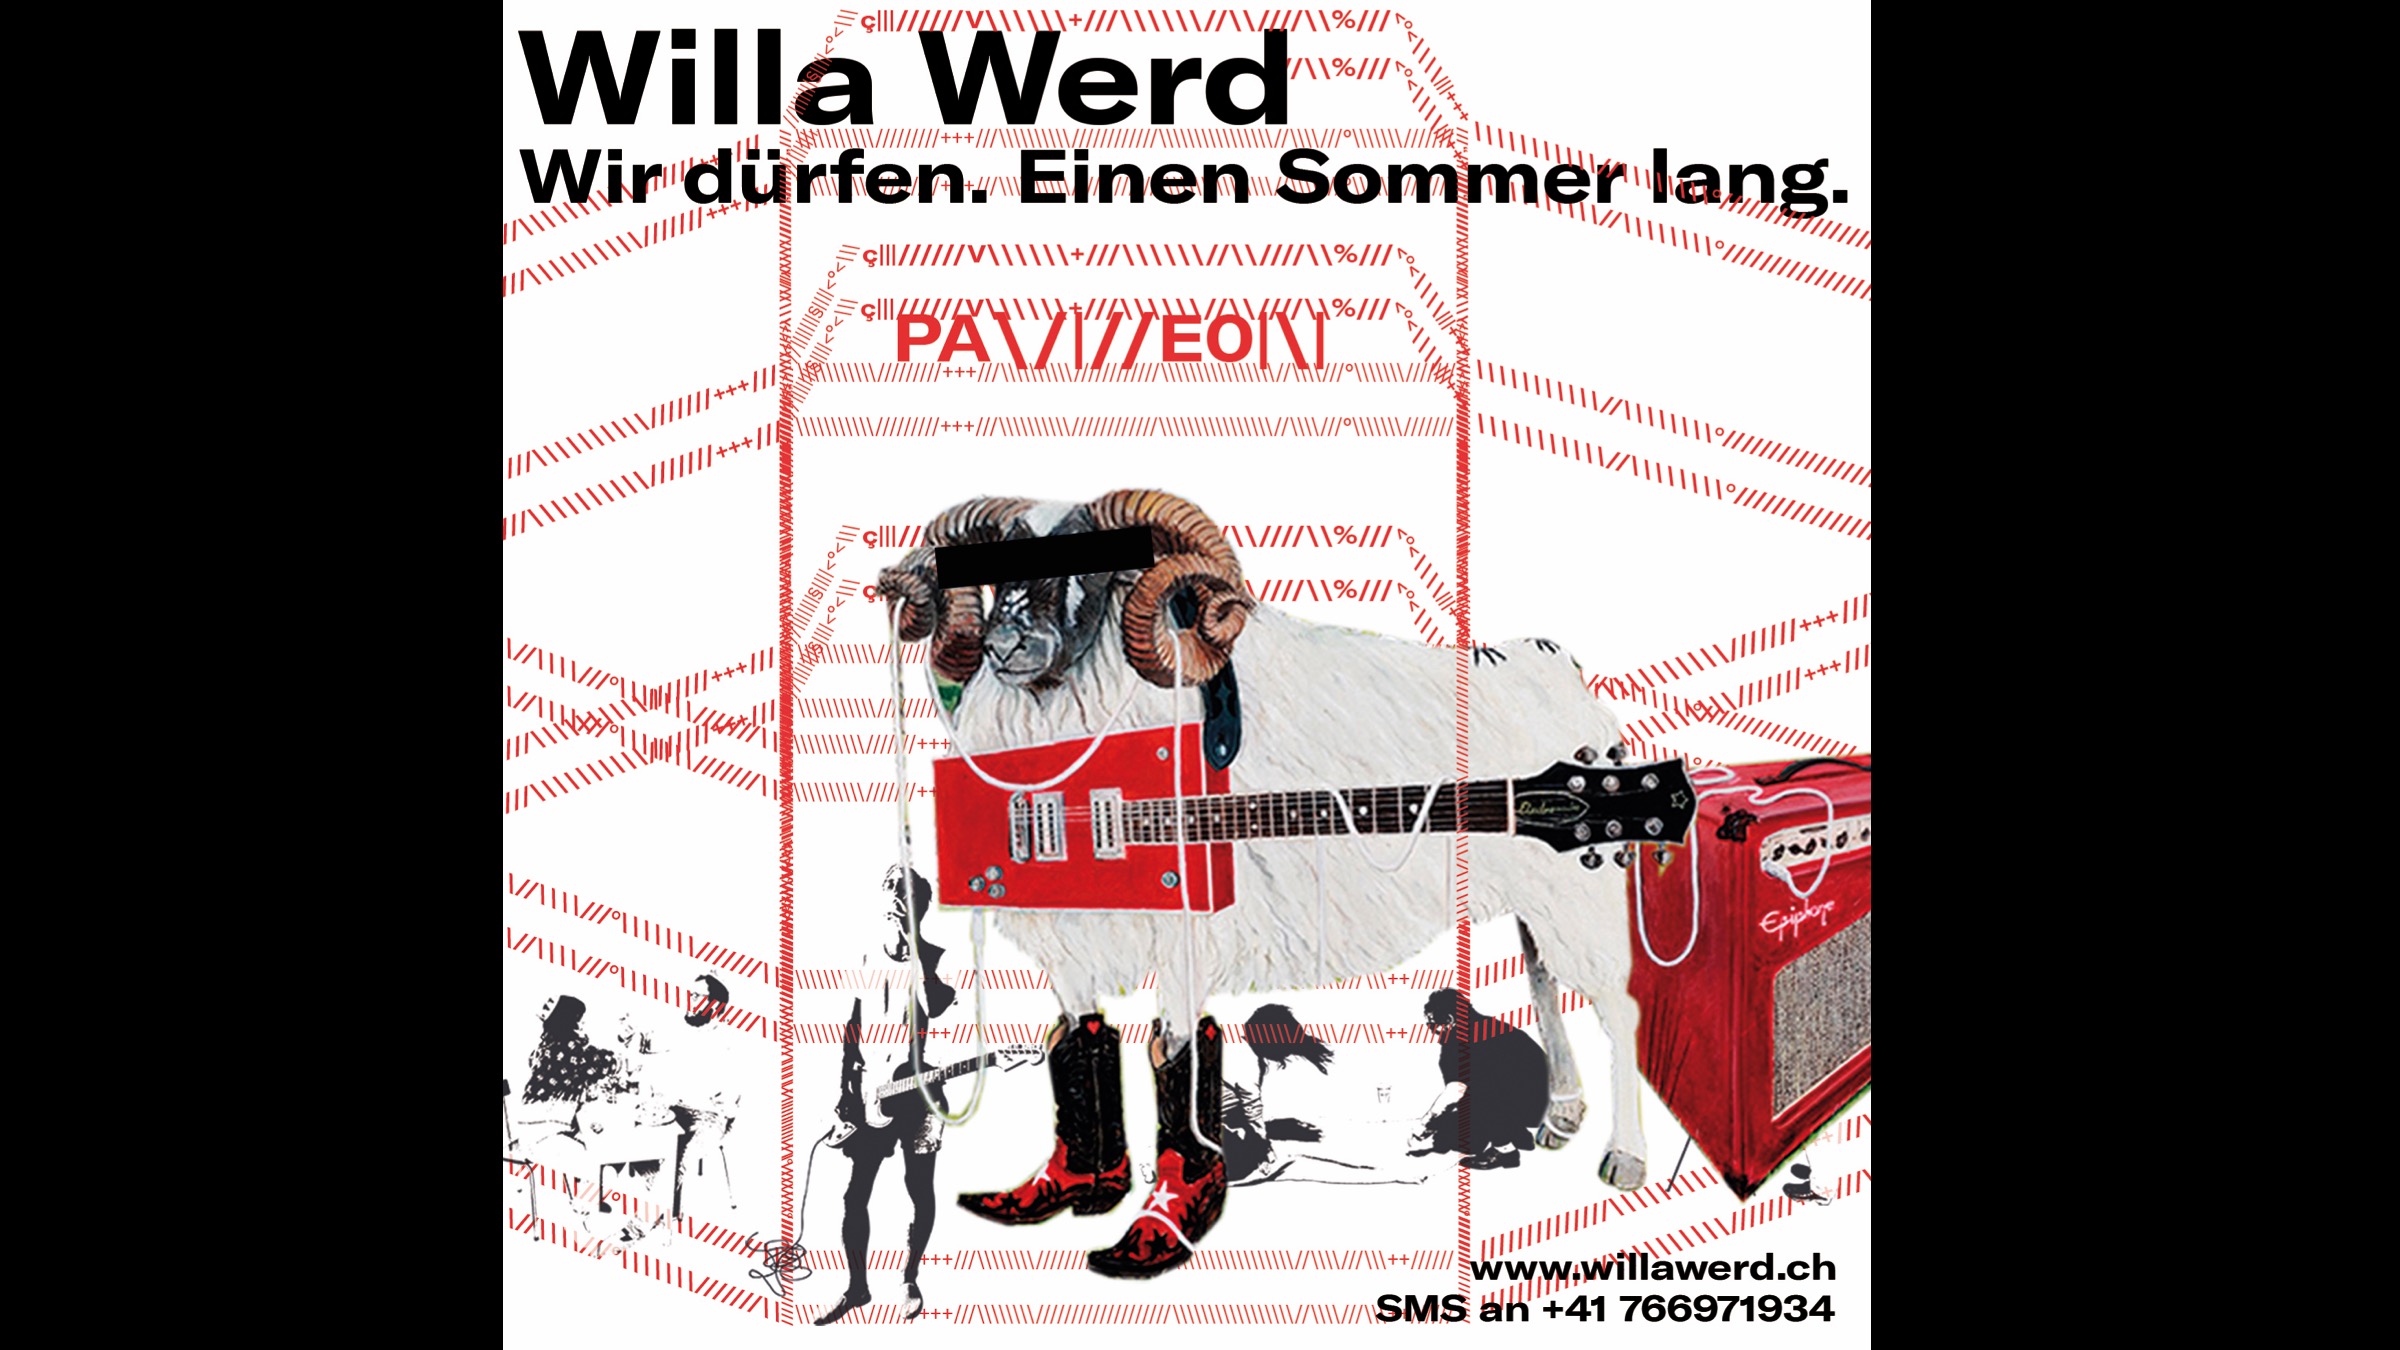 Willa Werd